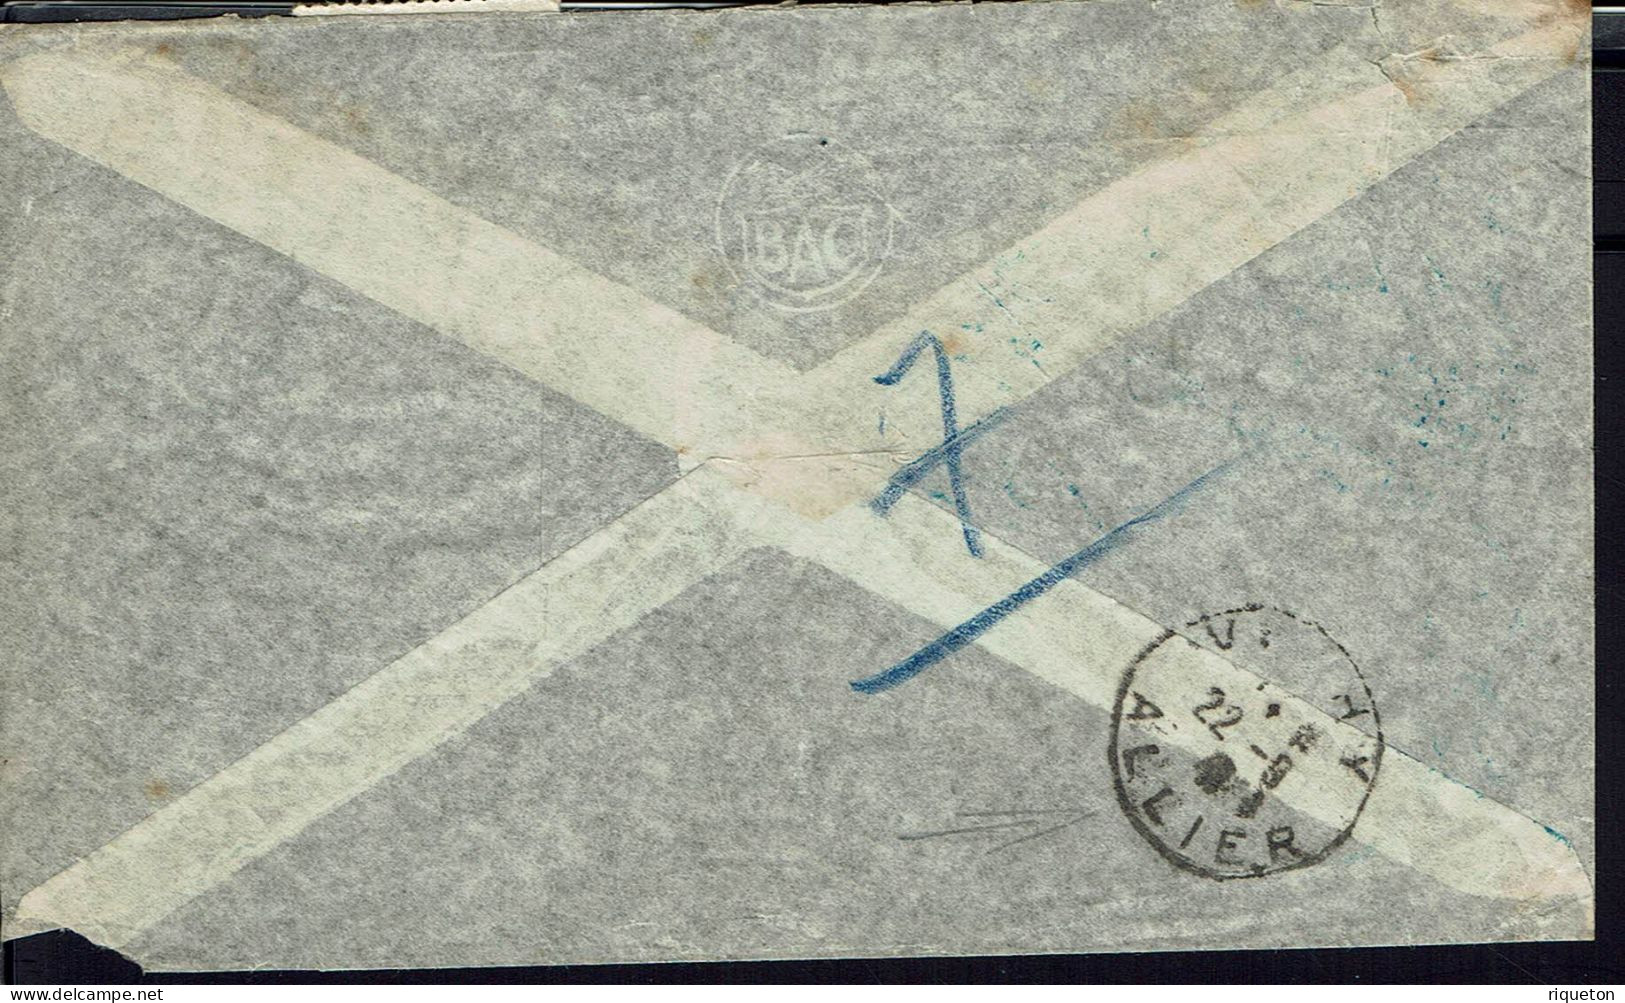 Argentine. 1941.Corr. Officielle Rec. De L'Ambassade, Buenos Aires, Via Condor Lati Pour Le Consulat D Argentine Paris. - Poste Aérienne